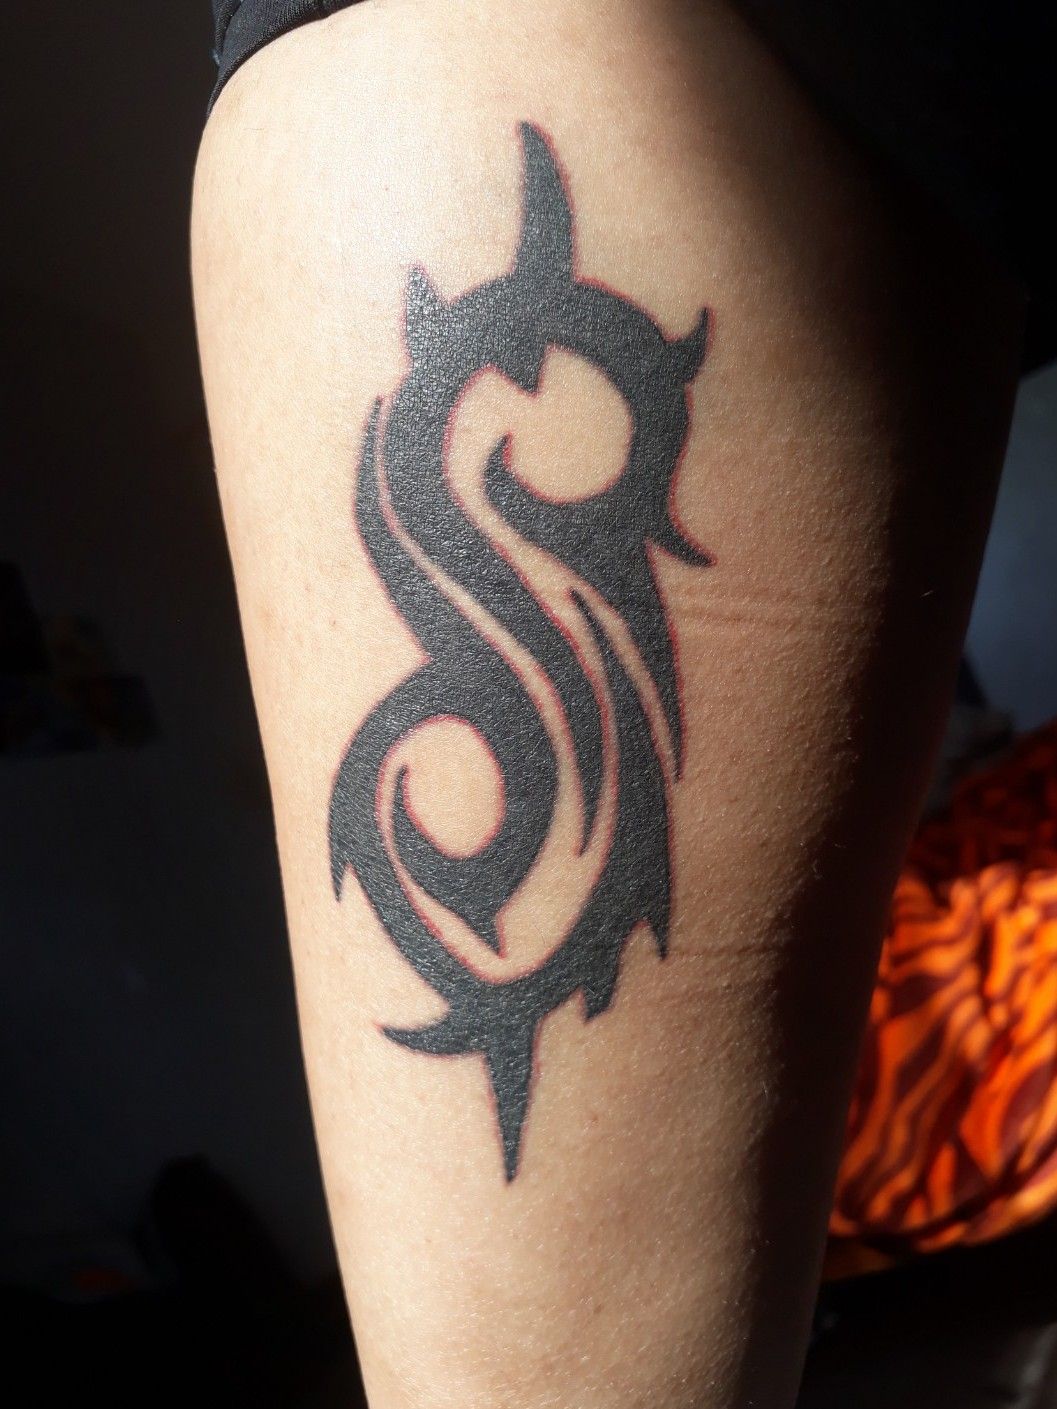 50 Slipknot Tattoos For Men  Heavy Metal Band Design Ideas